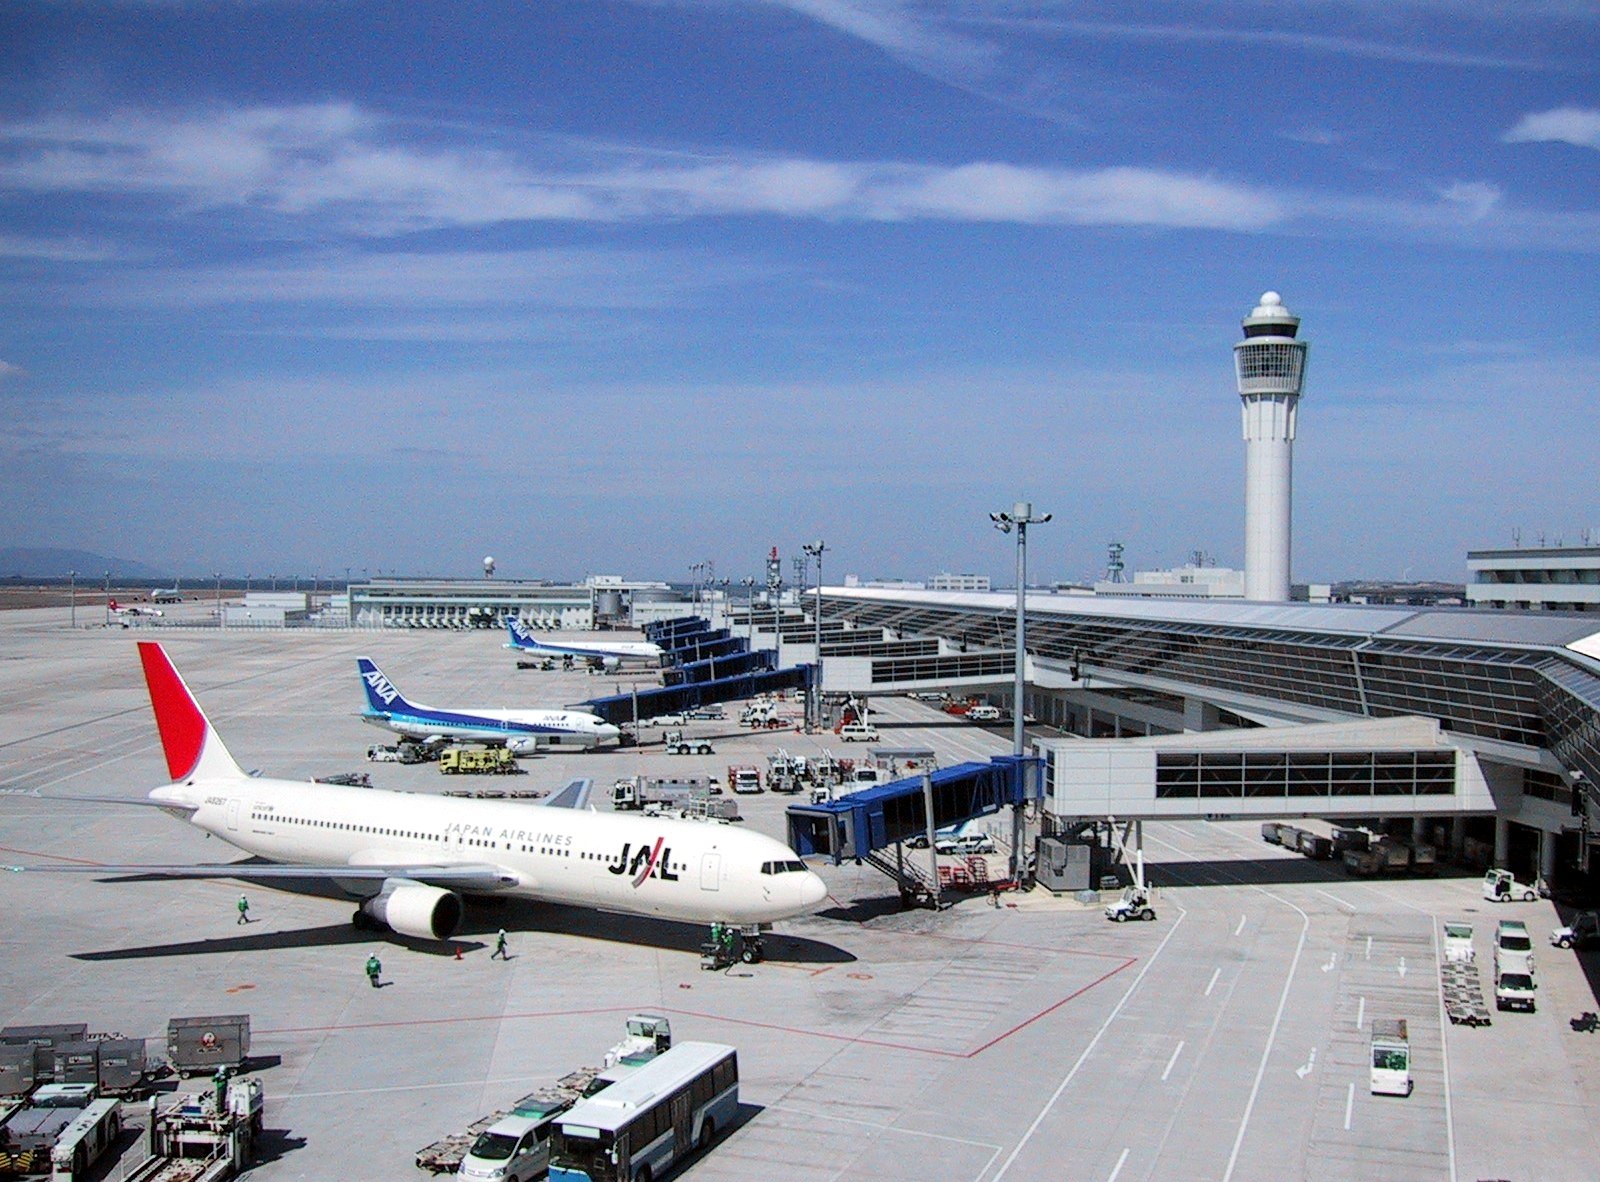 名古屋中部國際機場 中部國際機場 概況 規模與數據 交通 航線 客運線 貨運線 中文百科全書